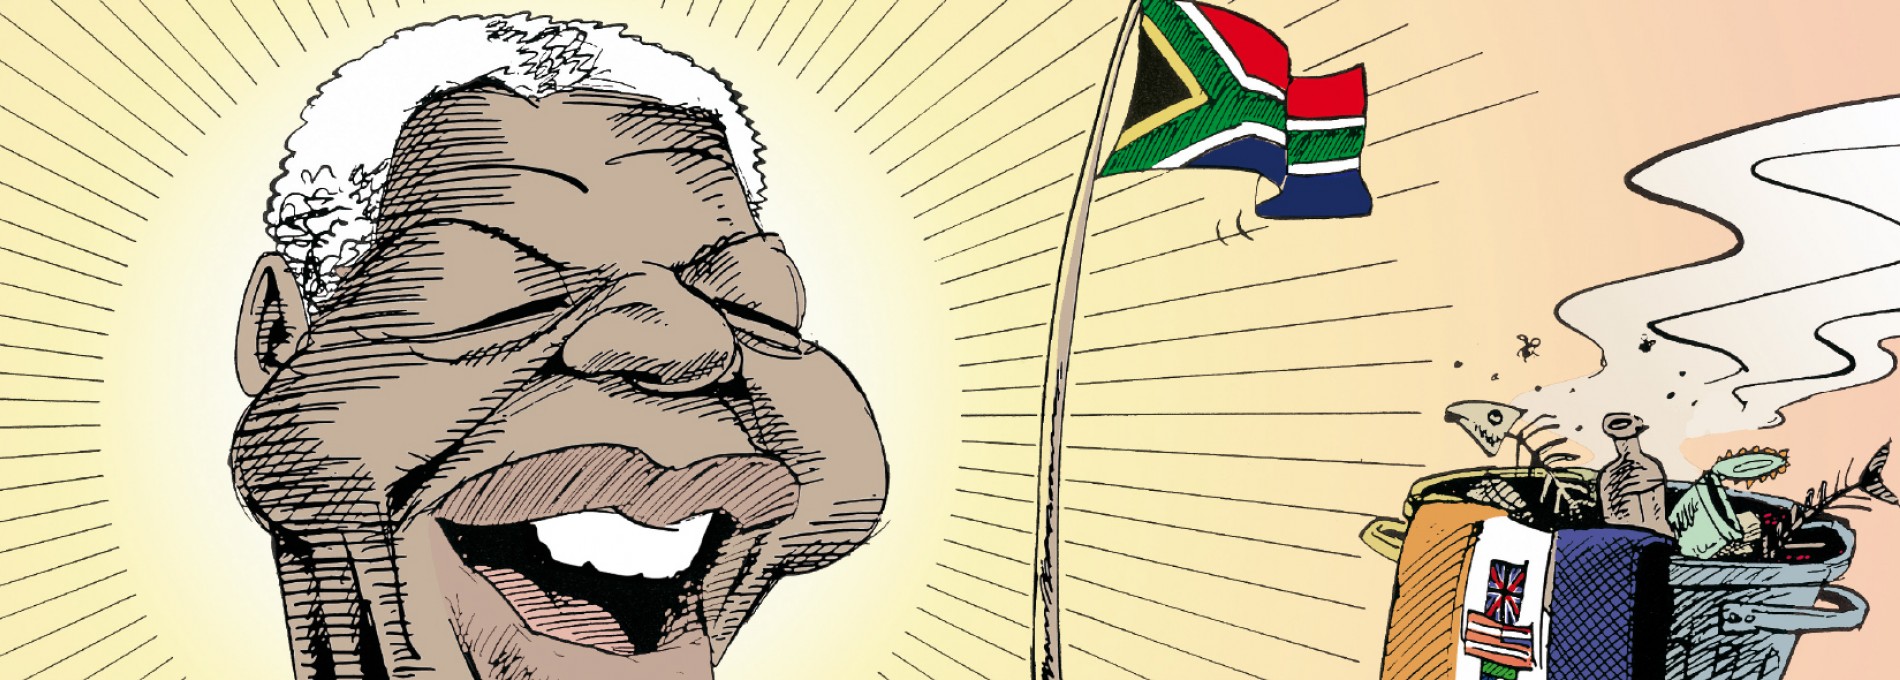 Cartunista faz humor como protesto na África do Sul